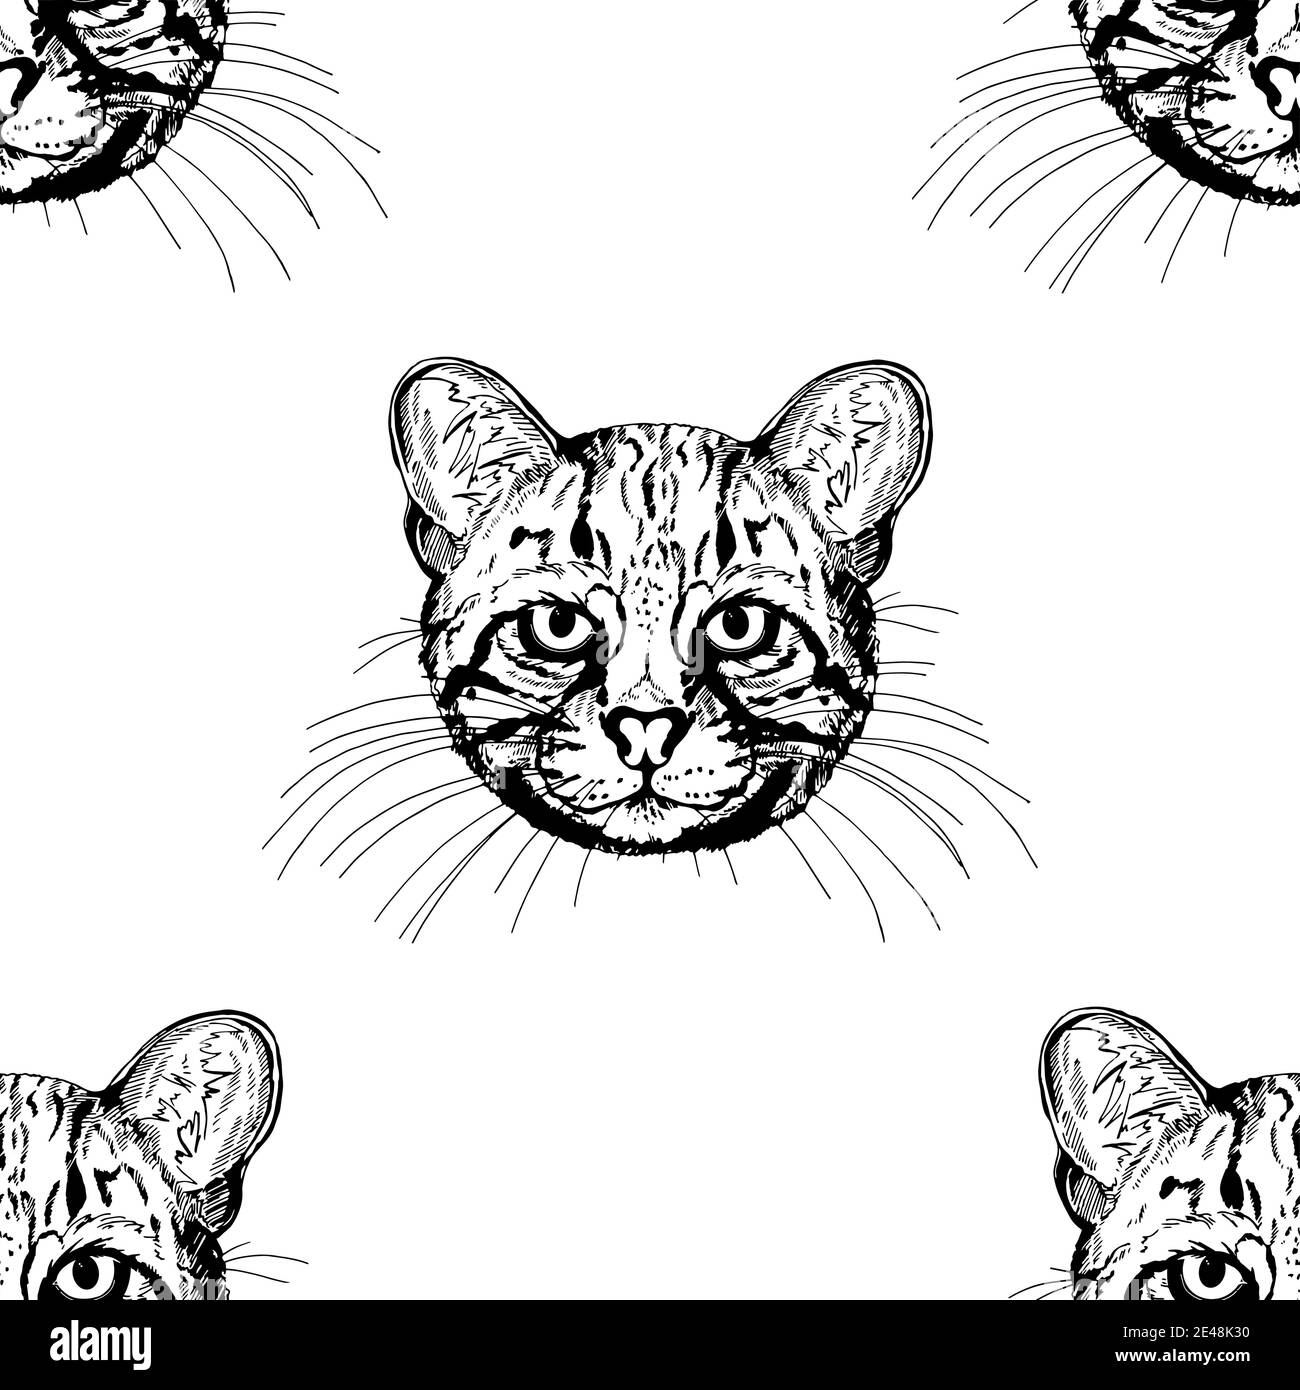 Nahtloses Muster von Hand gezeichnet Skizze Stil Geoffroys Katzen isoliert auf weißem Hintergrund. Vektorgrafik. Stock Vektor